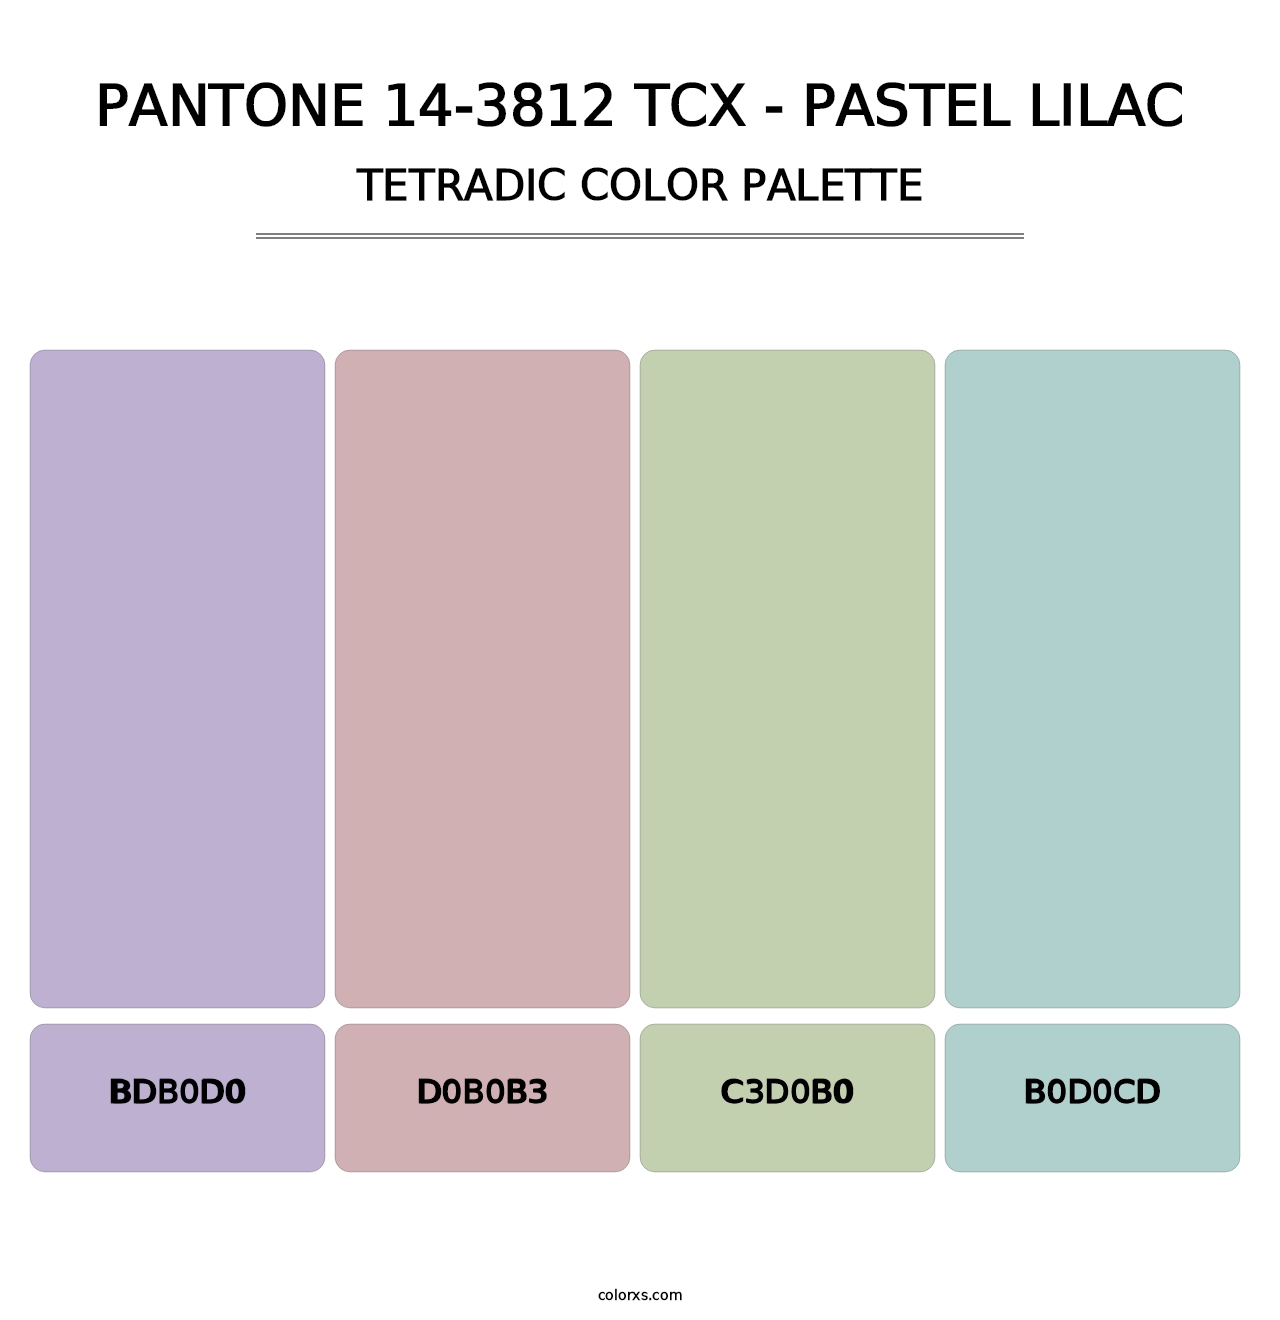 PANTONE 14-3812 TCX - Pastel Lilac - Tetradic Color Palette